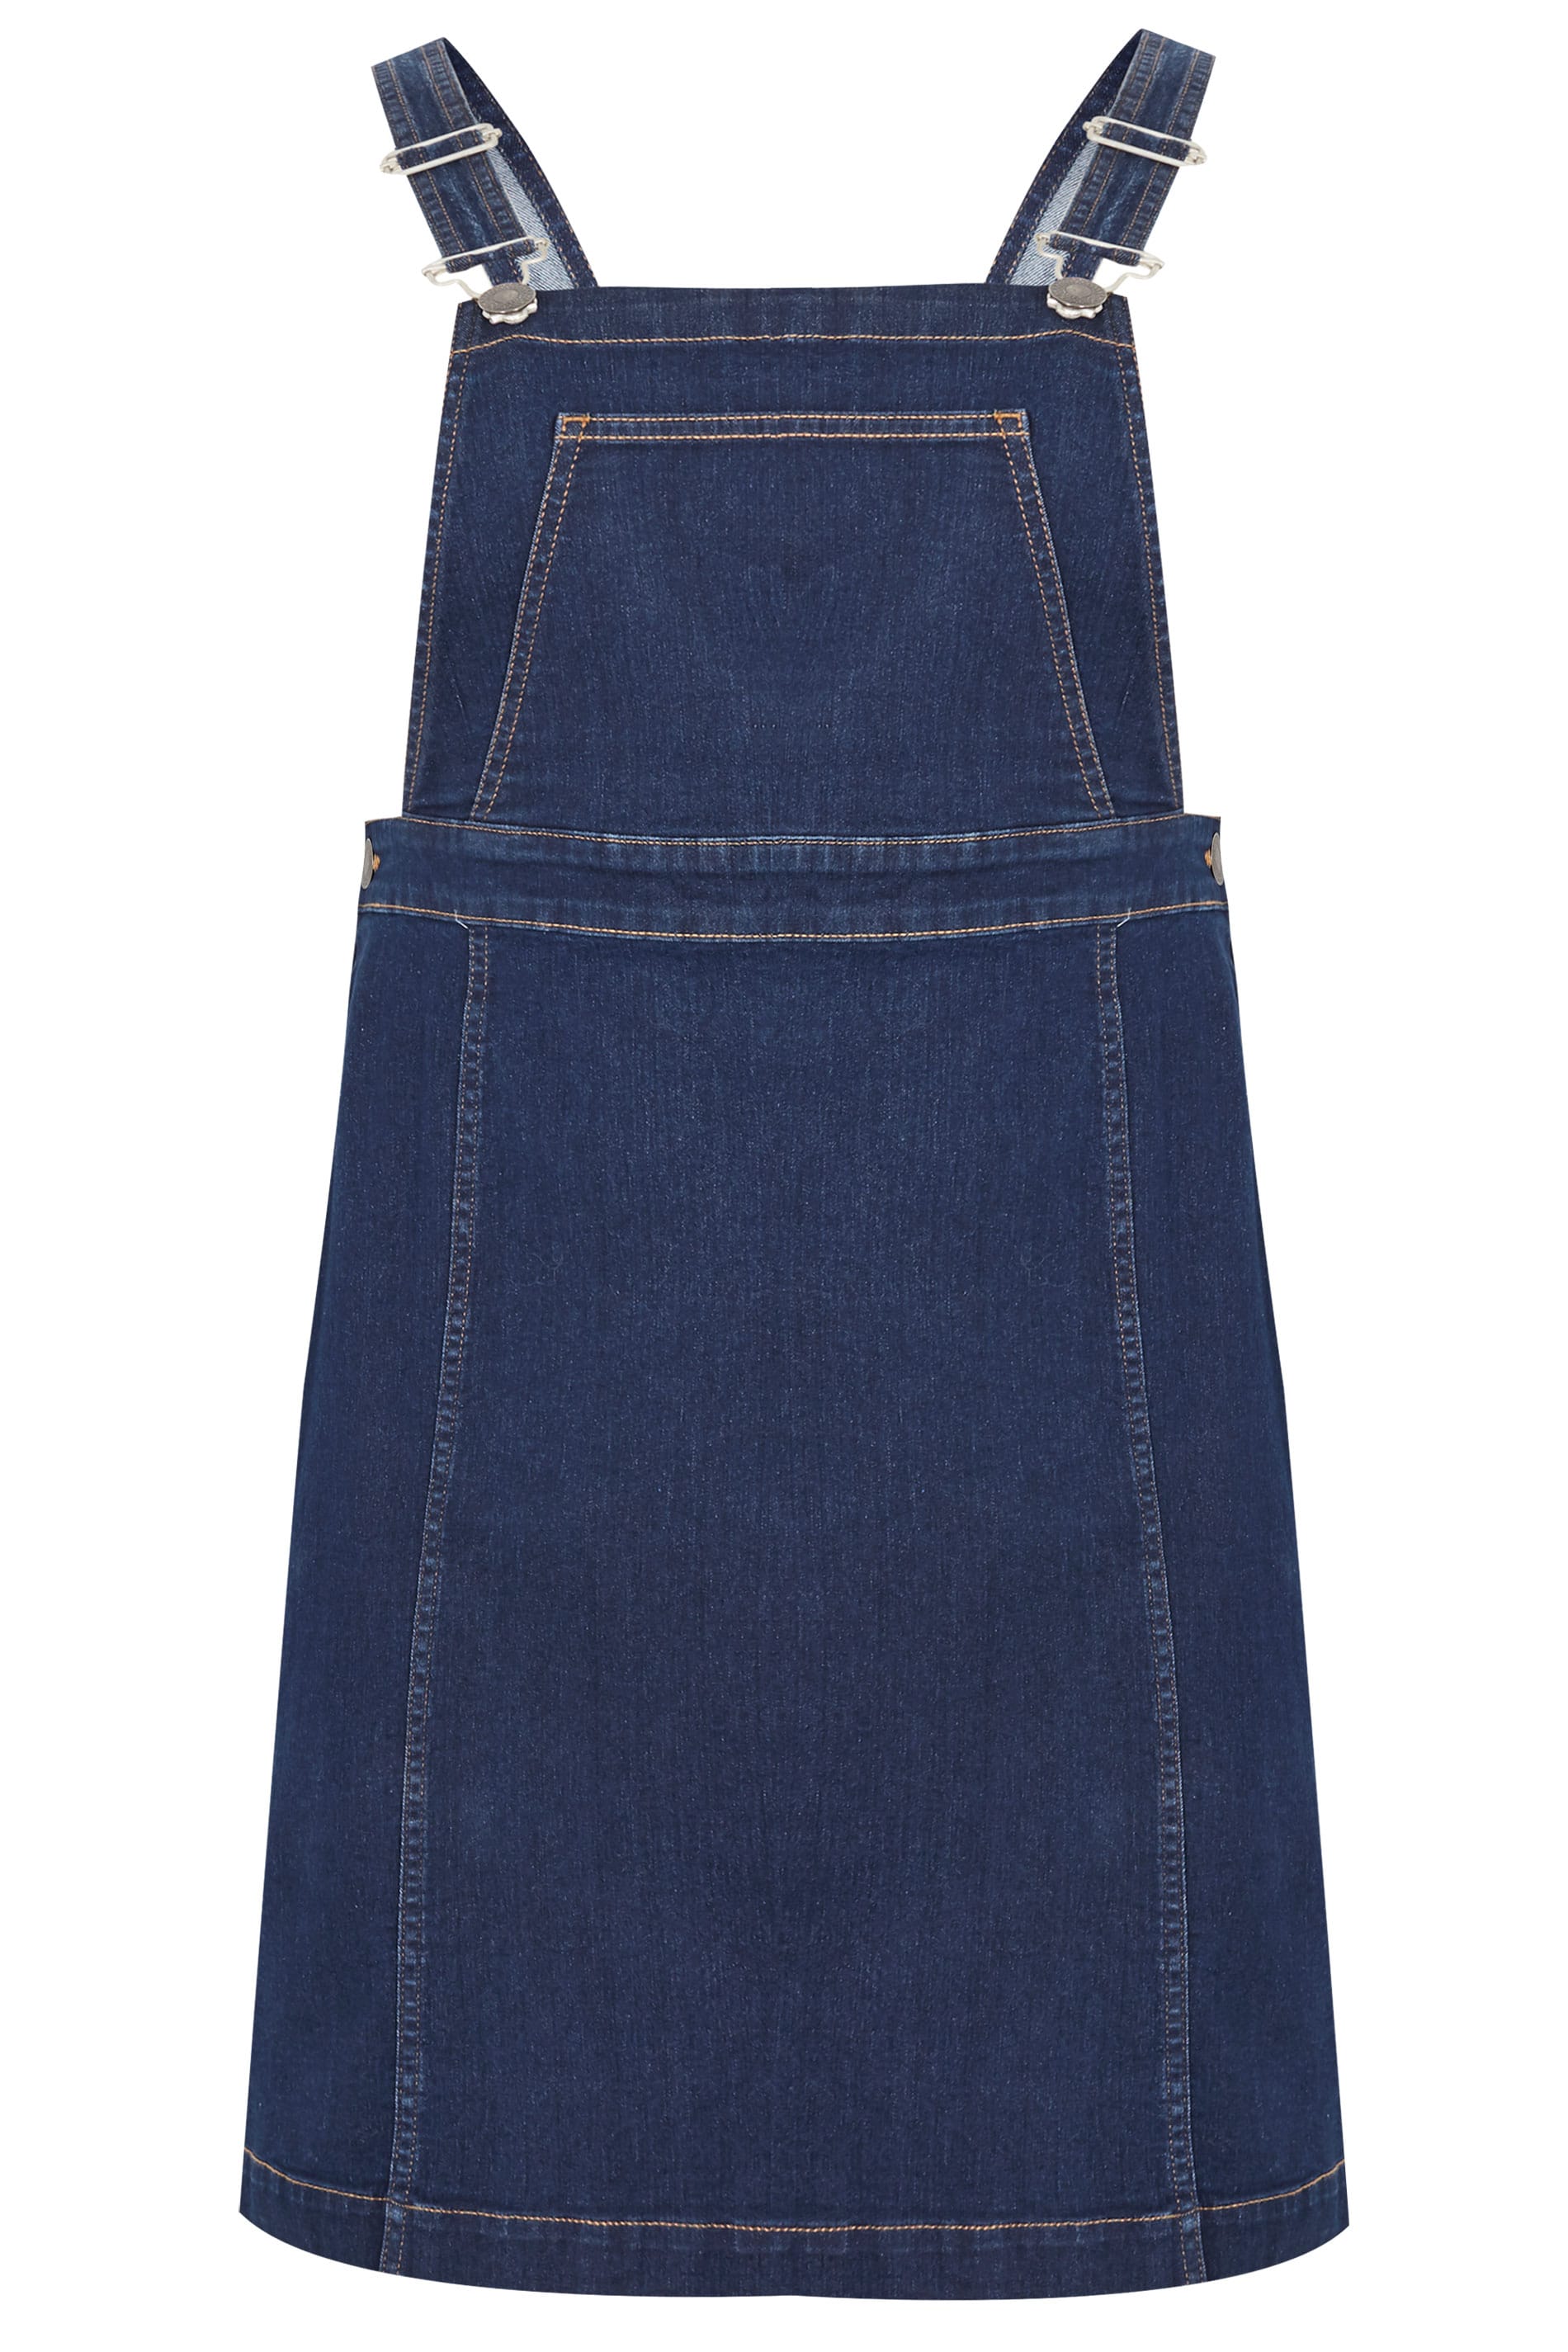 Indigo Blue Denim Pinafore Dress | Plus Sizes 16 to 36 | Yours Clothing